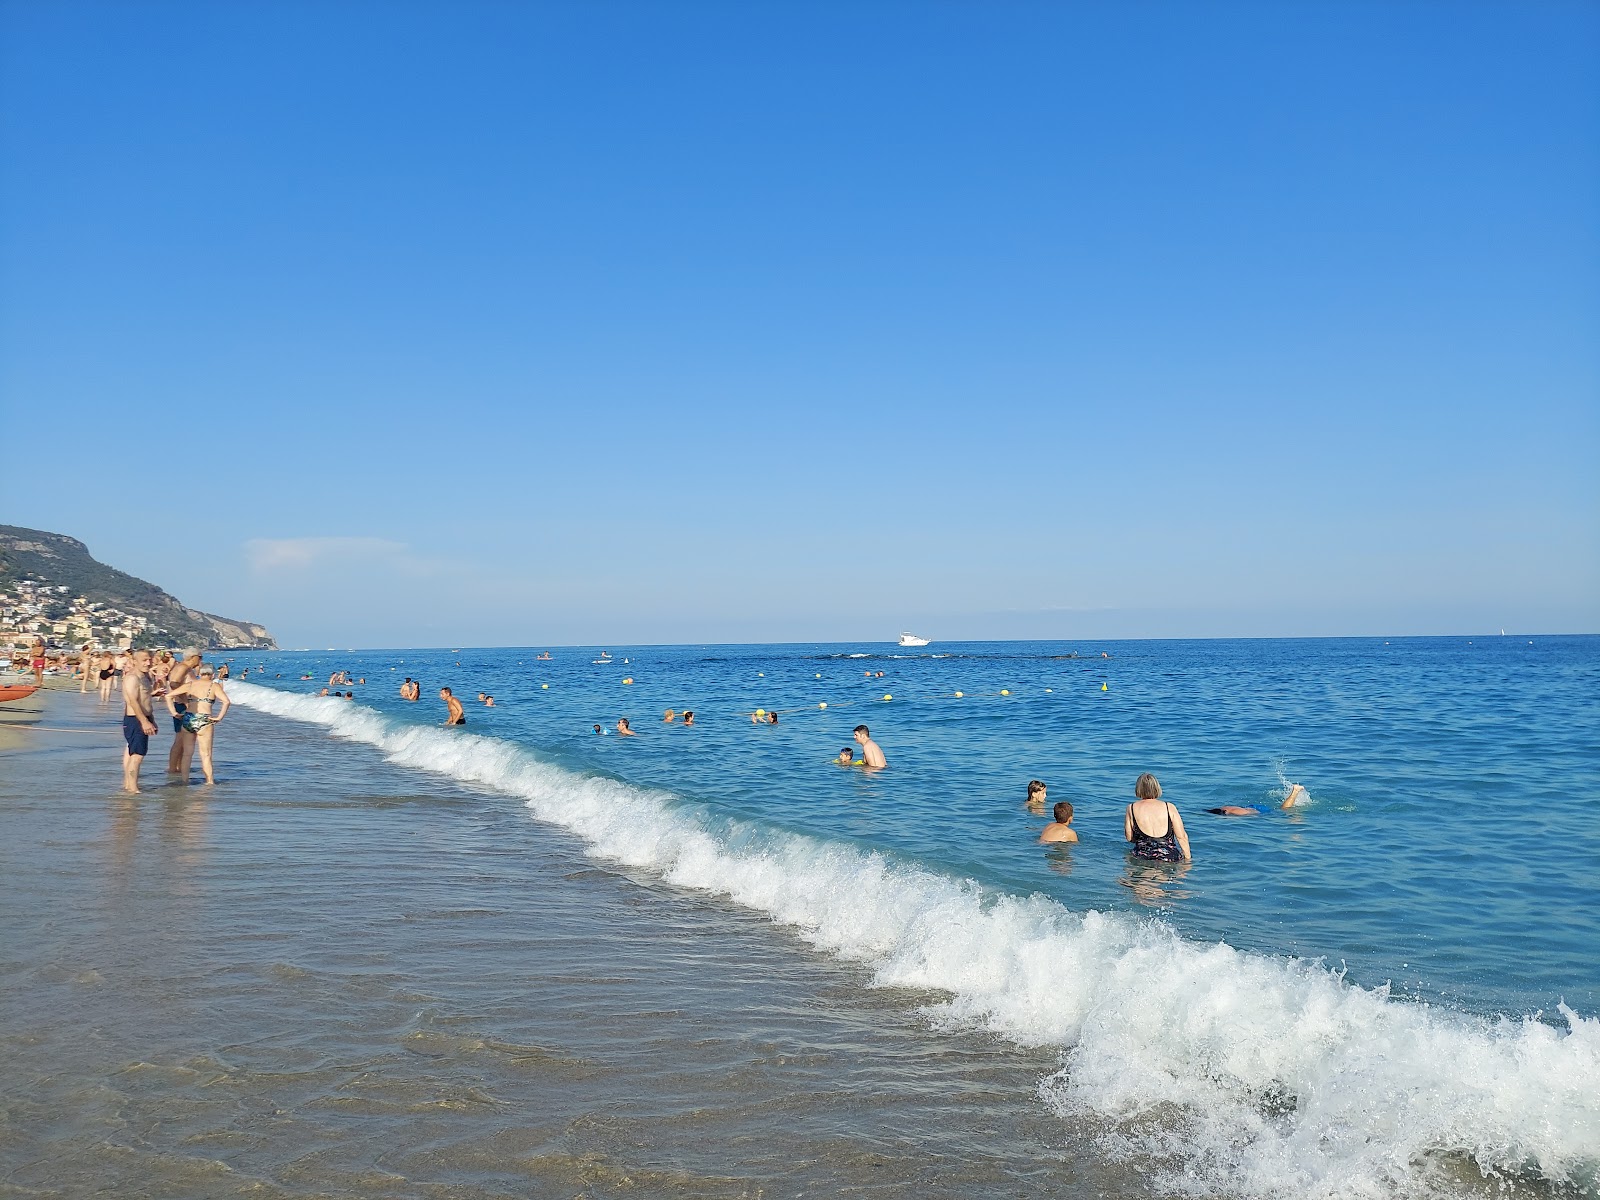 Spiaggia di Borgio'in fotoğrafı gri ince çakıl taş yüzey ile